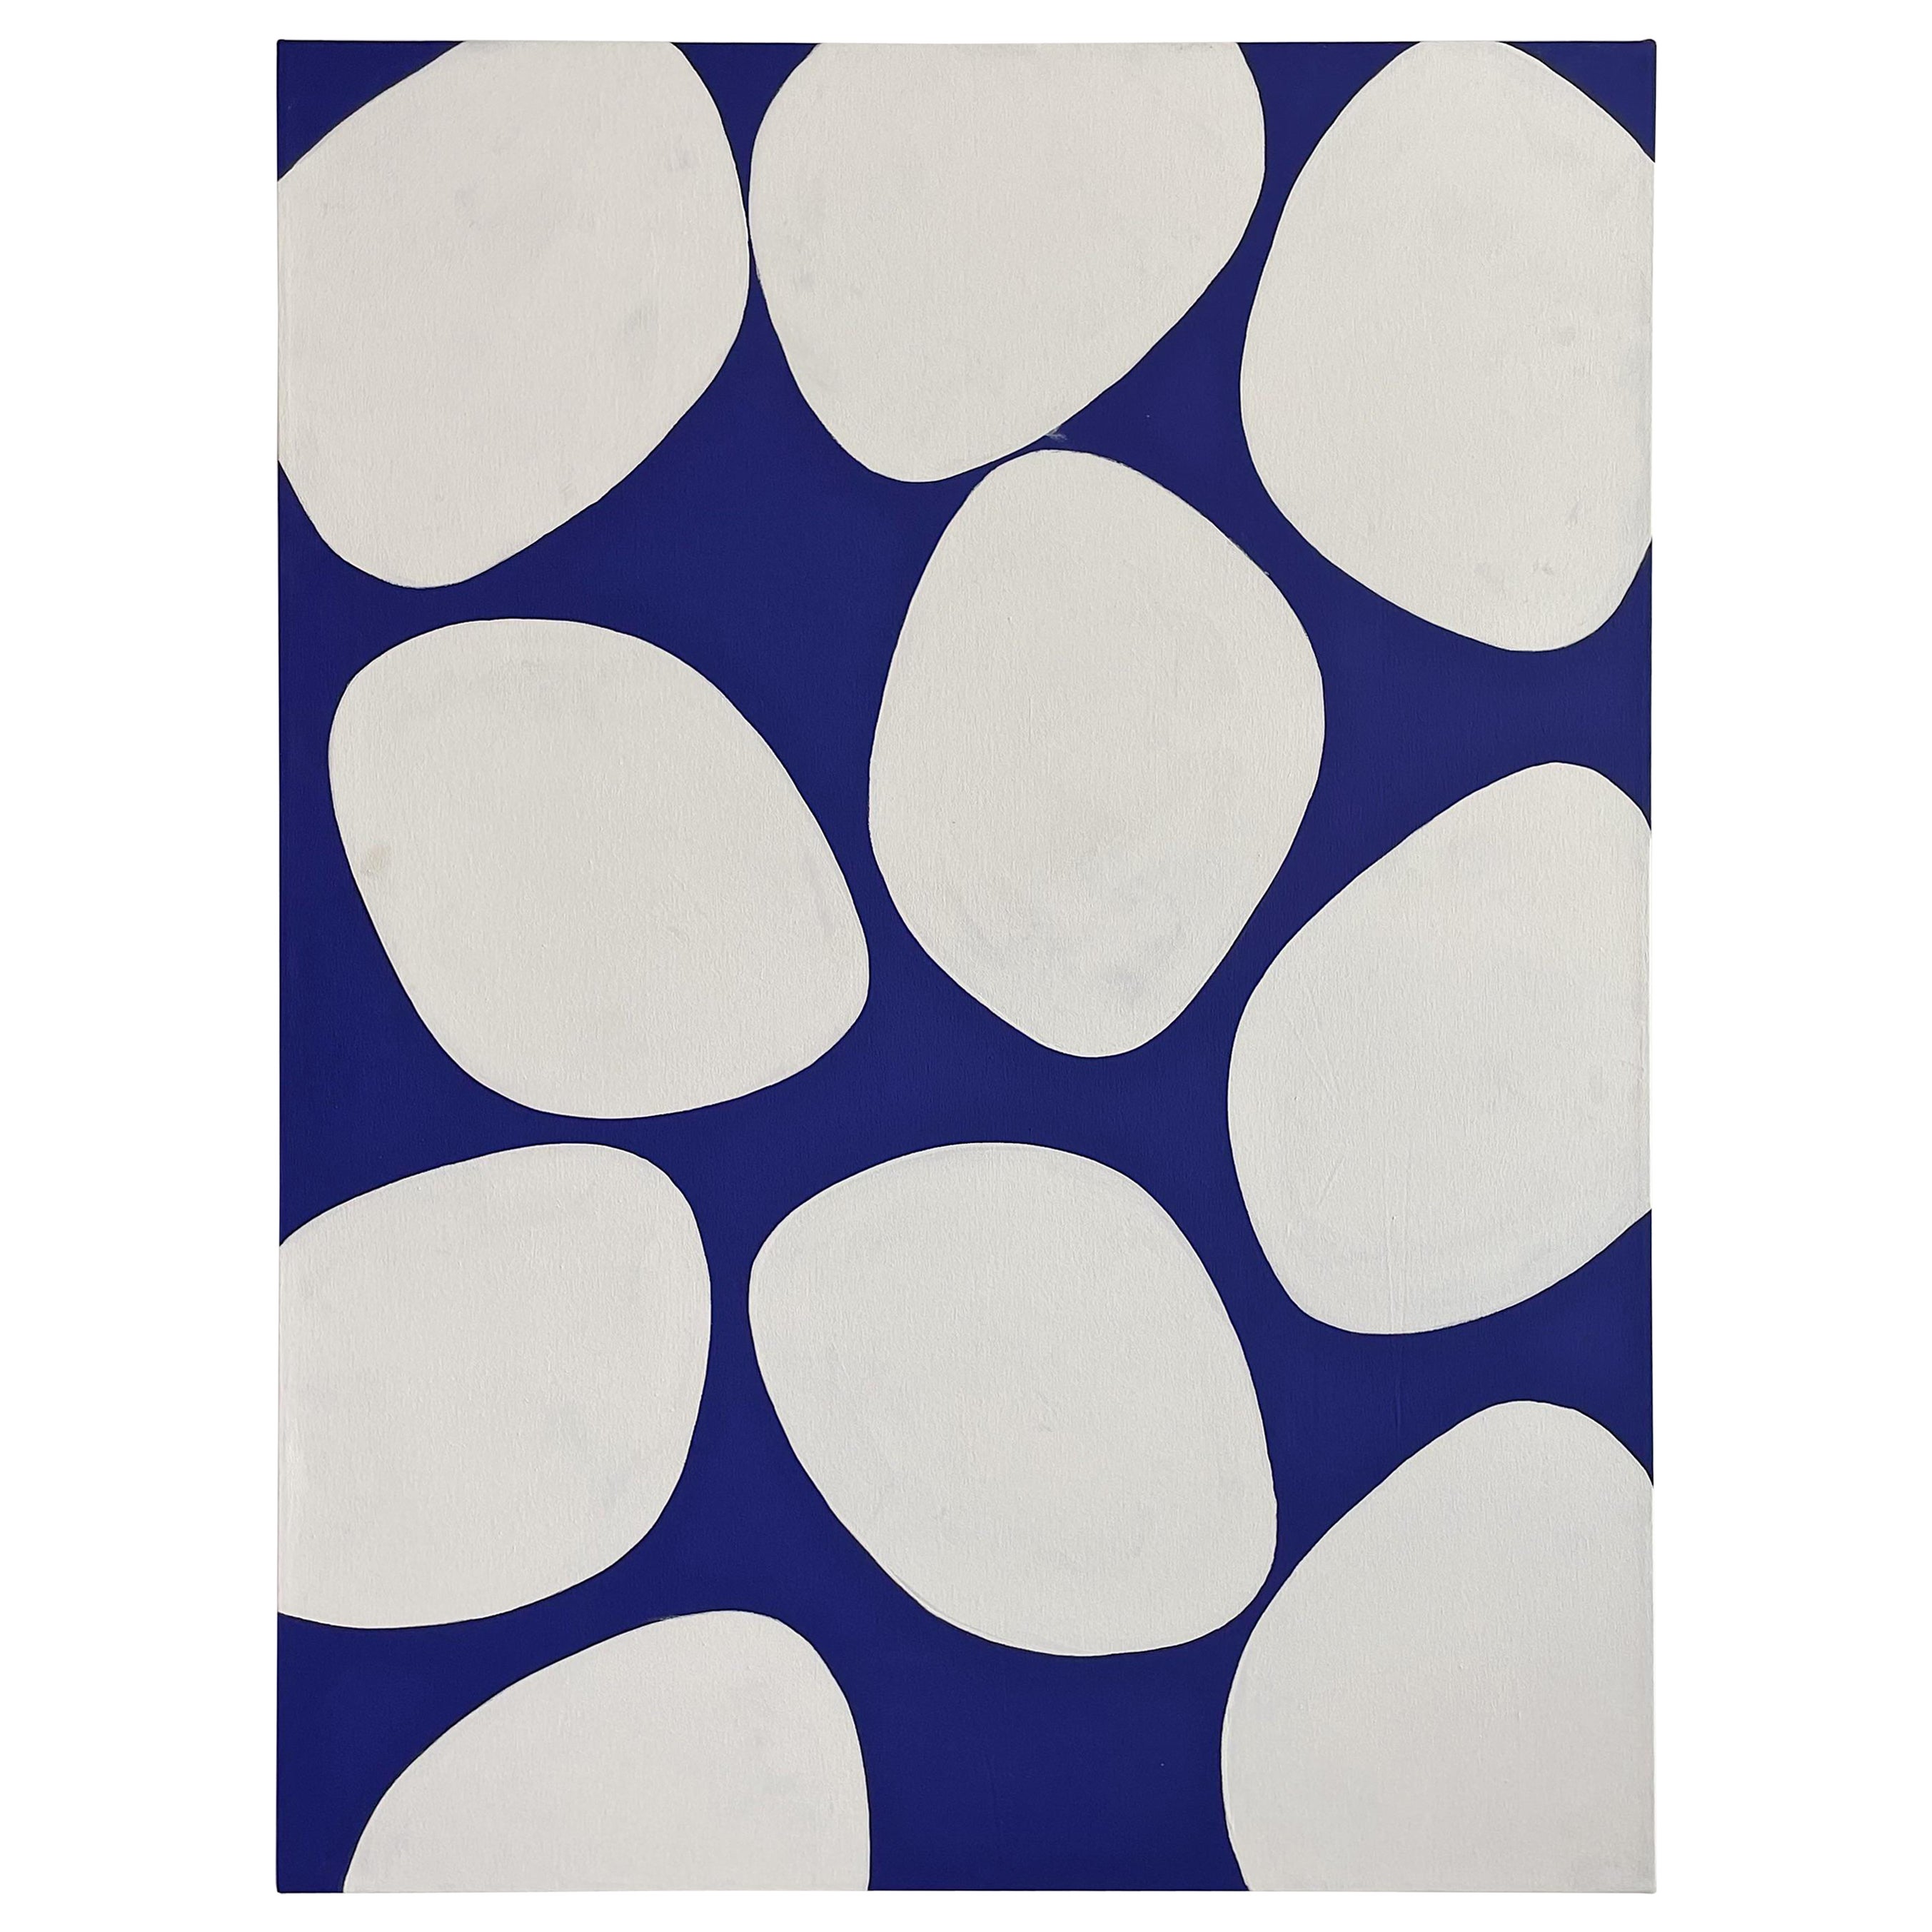 Mark Humphrey Original Blaue und weiße Kreise Acryl auf Leinwand